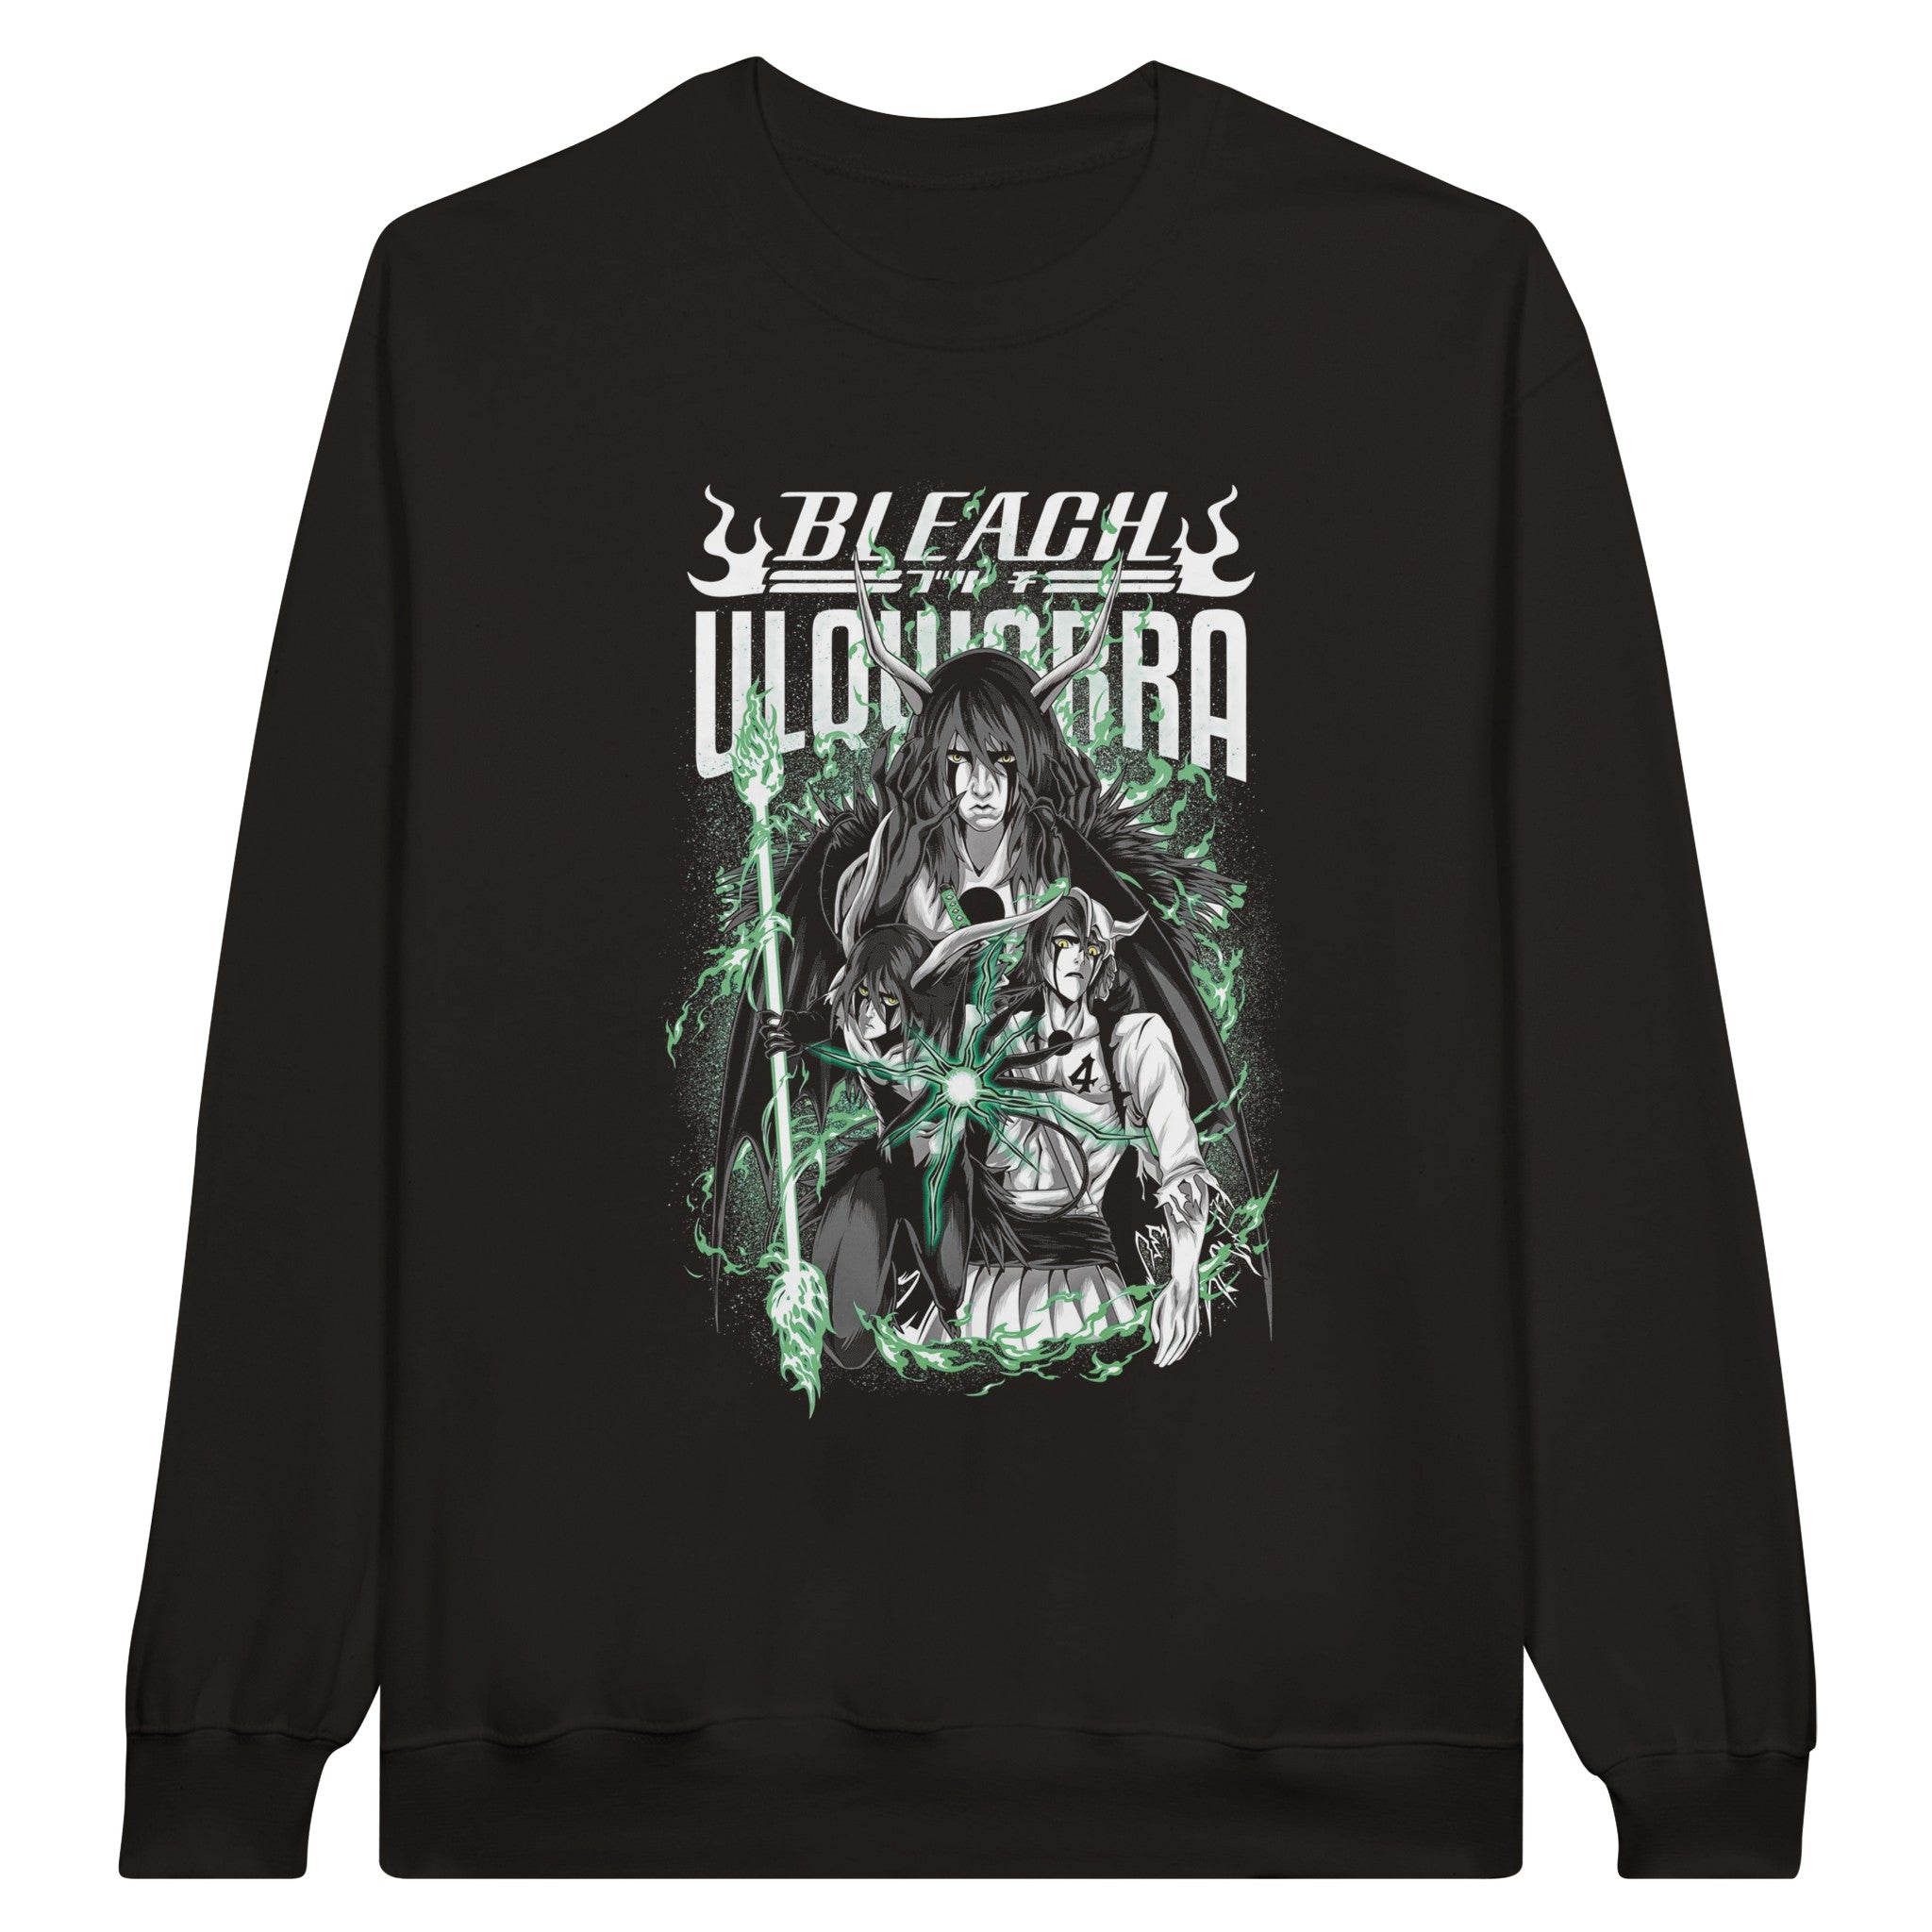 shop and buy bleach anime clothing ulquiorra sweatshirt/longsleeve/jumper